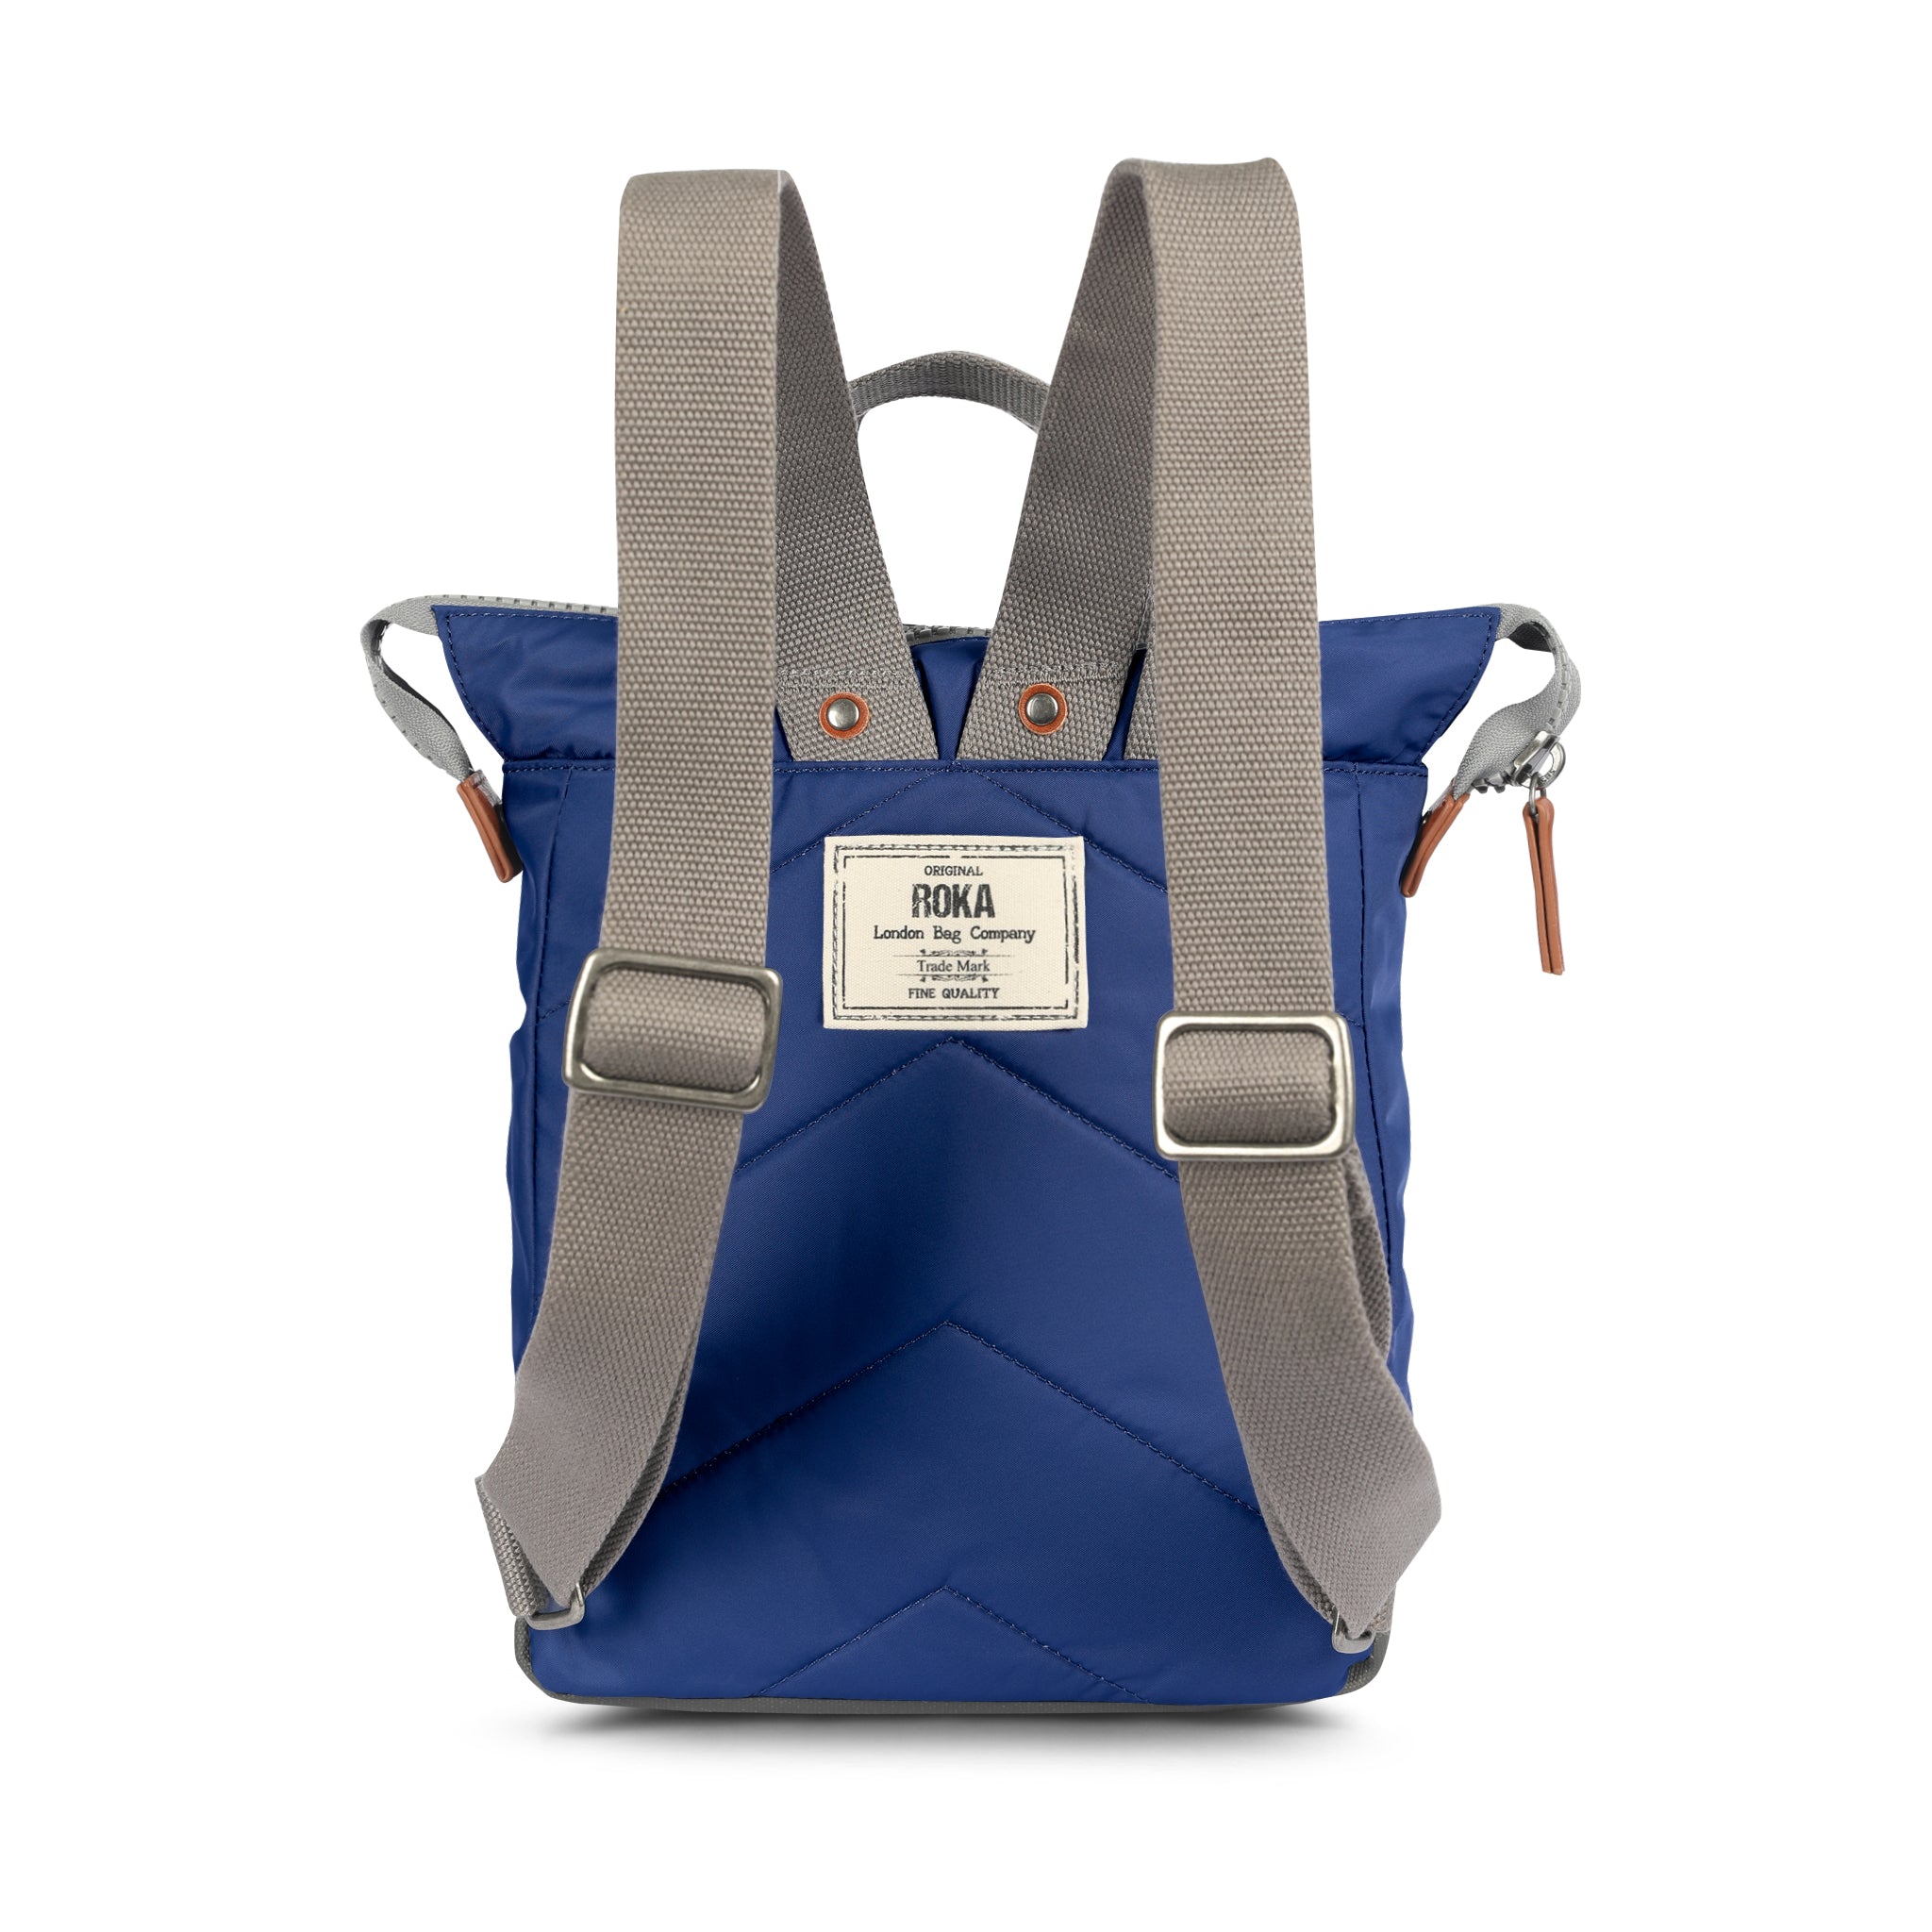 TUMI Womens Travel and Laptop Bag- Orange | Orange bag, Bags, Laptop bag